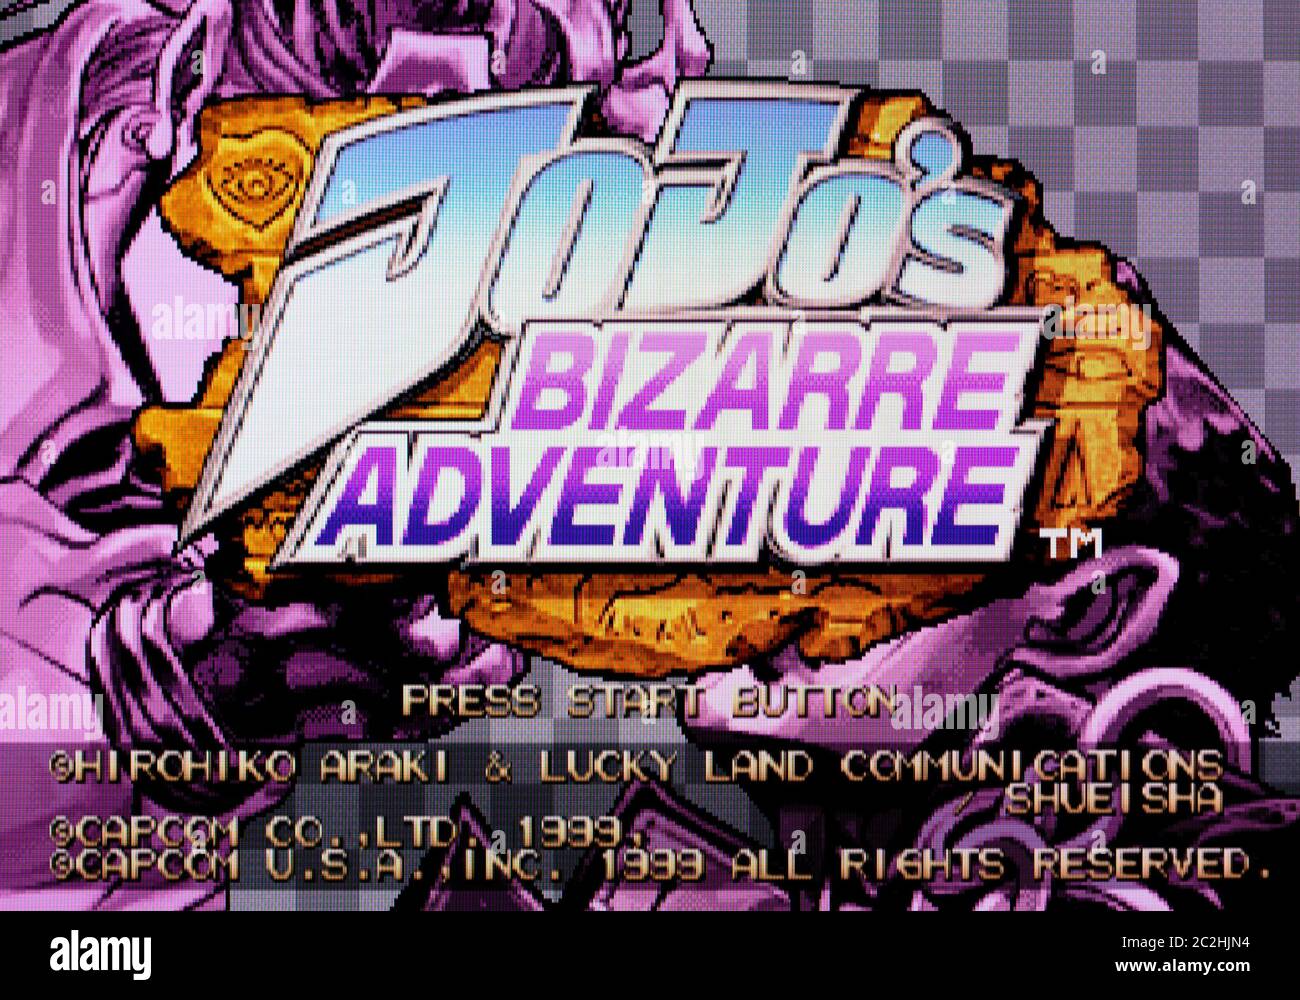 JoJo's Bizarre Adventure (USA) : Capcom Entertainment : Free